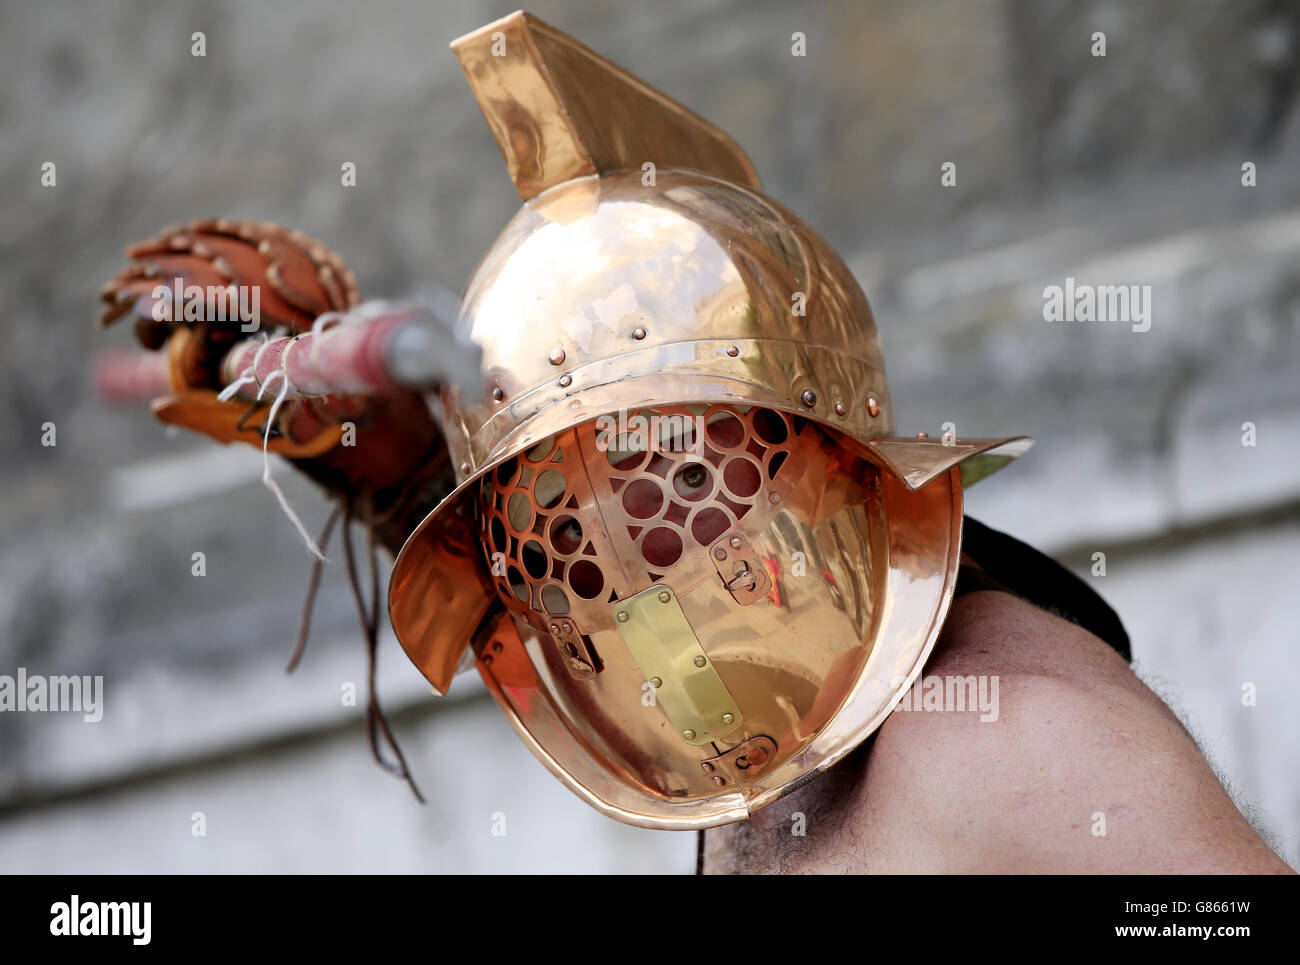 Un artista gladiatorial se viste como un gladiador andabato en preparación para el lanzamiento de los Juegos de Gladiadores, Guildhall Yard, Londres. Foto de stock